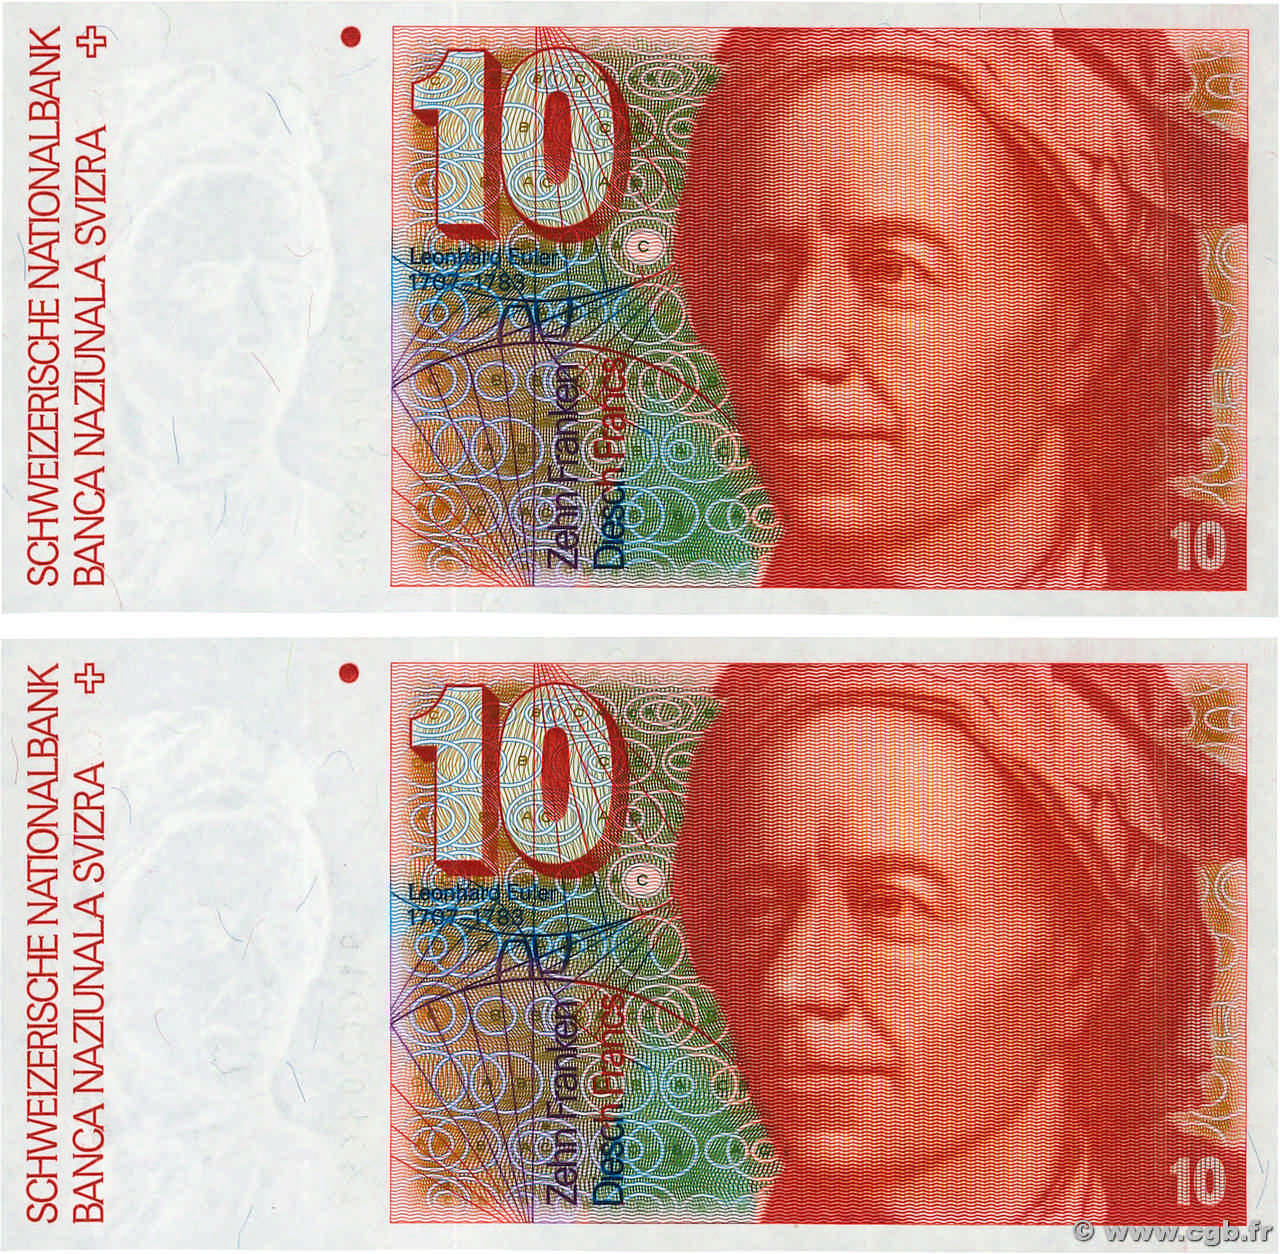 10 Francs Consécutifs SUISSE  1991 P.53j FDC